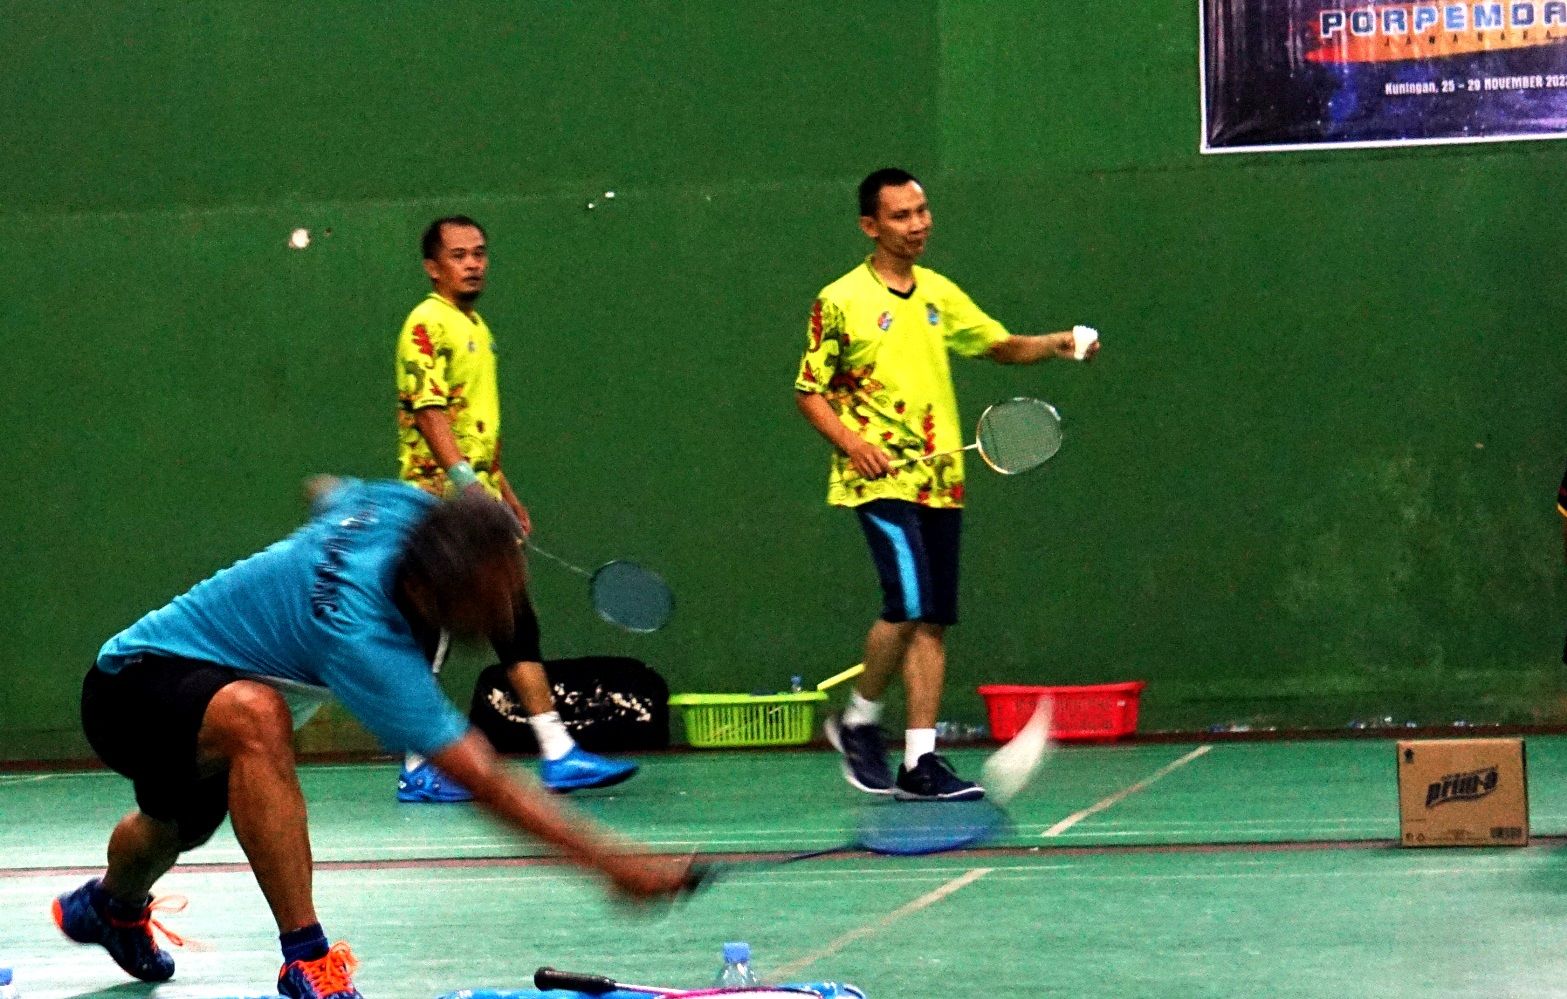 Yudi Iskandar yang merupakan peraih Juara Cabor Badminton pada Porpemda Jabar Tahun 2019 lalu, sekaligus sempat menjadi pelatih bagi Dheva Anrimusthi ketika memperkuat Bandung di ajang Popda Jabar, sebelum Dheva menjadi atlet Paralimpiade.*